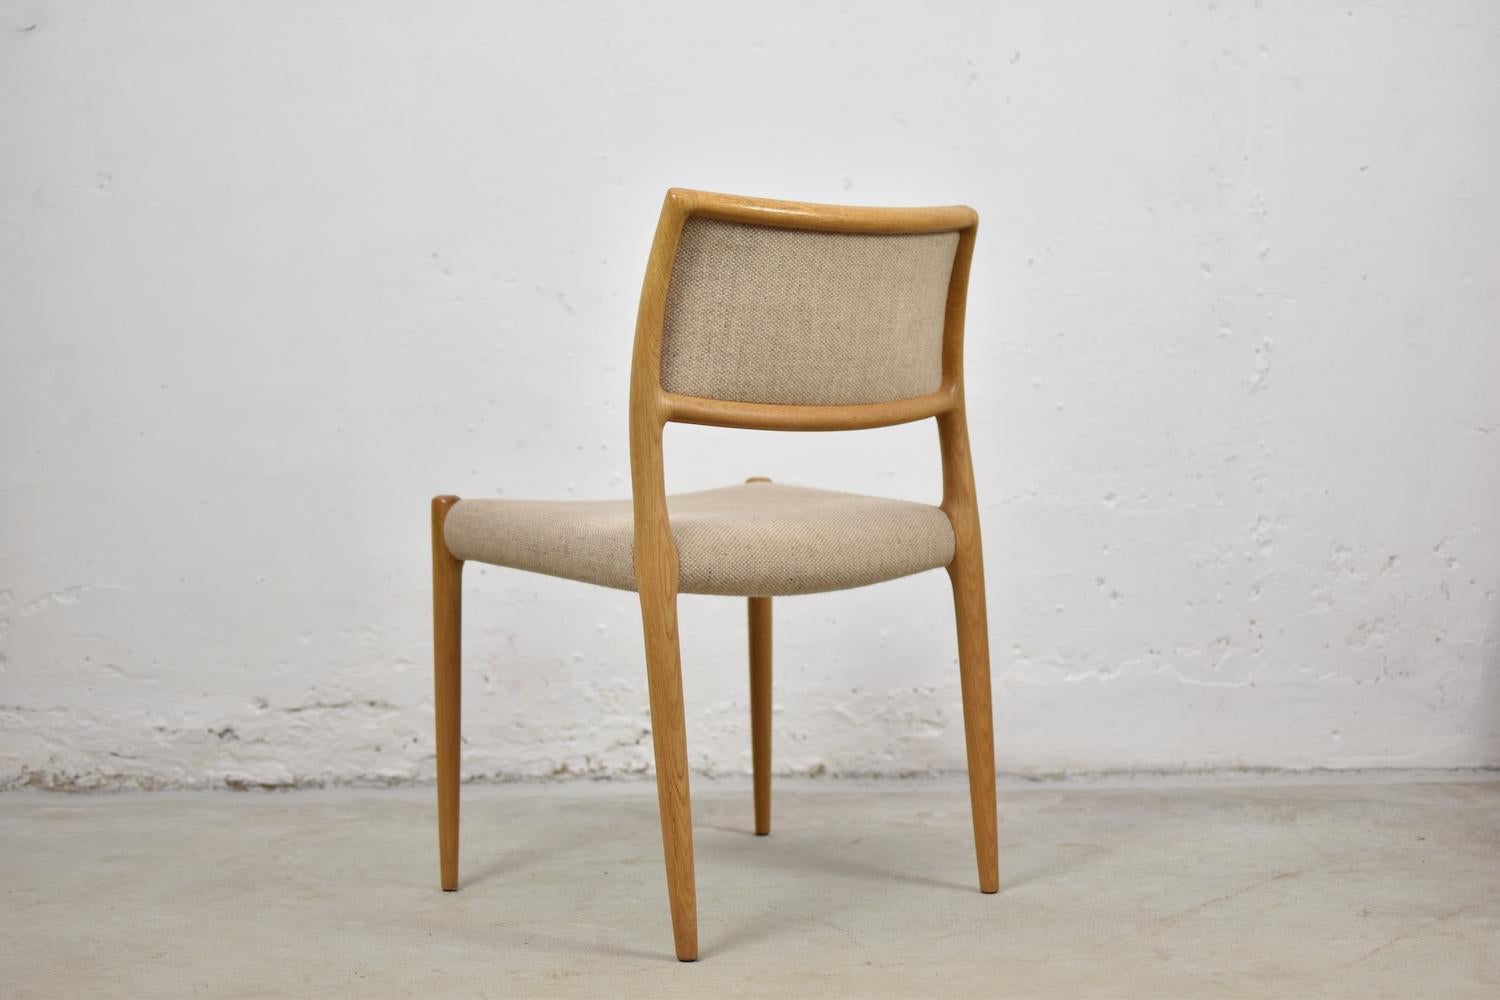 Mid-20th Century Model 80 Chairs by Niels Otto Møller for J.L.Møllers Mobelfabrik, Denmark, 1950s